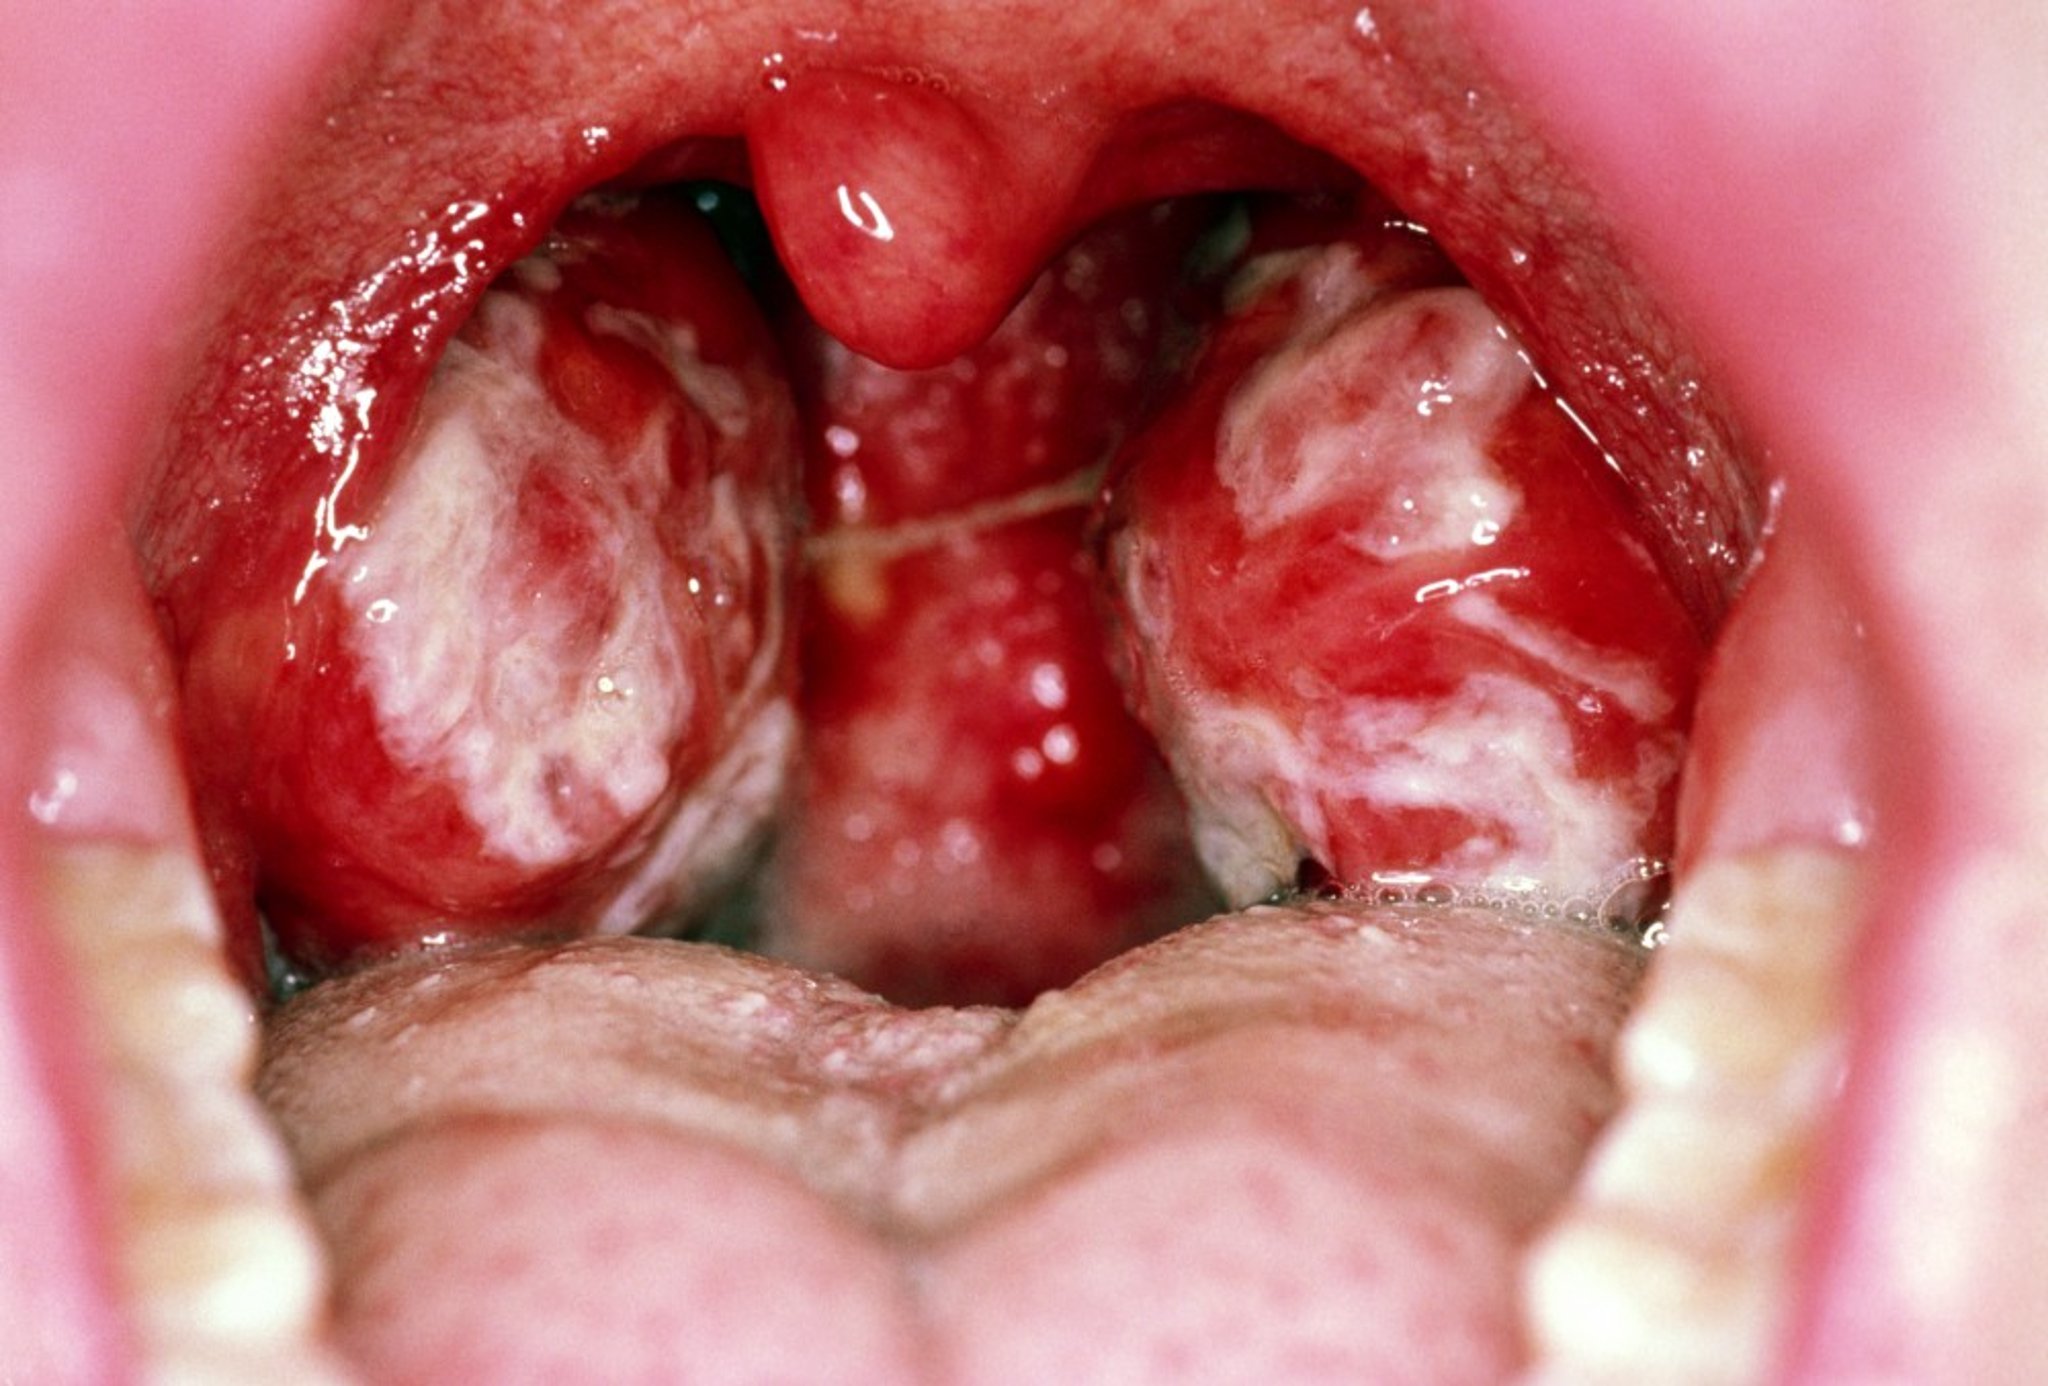 Infectious Mononucleosis (Pharyngitis)